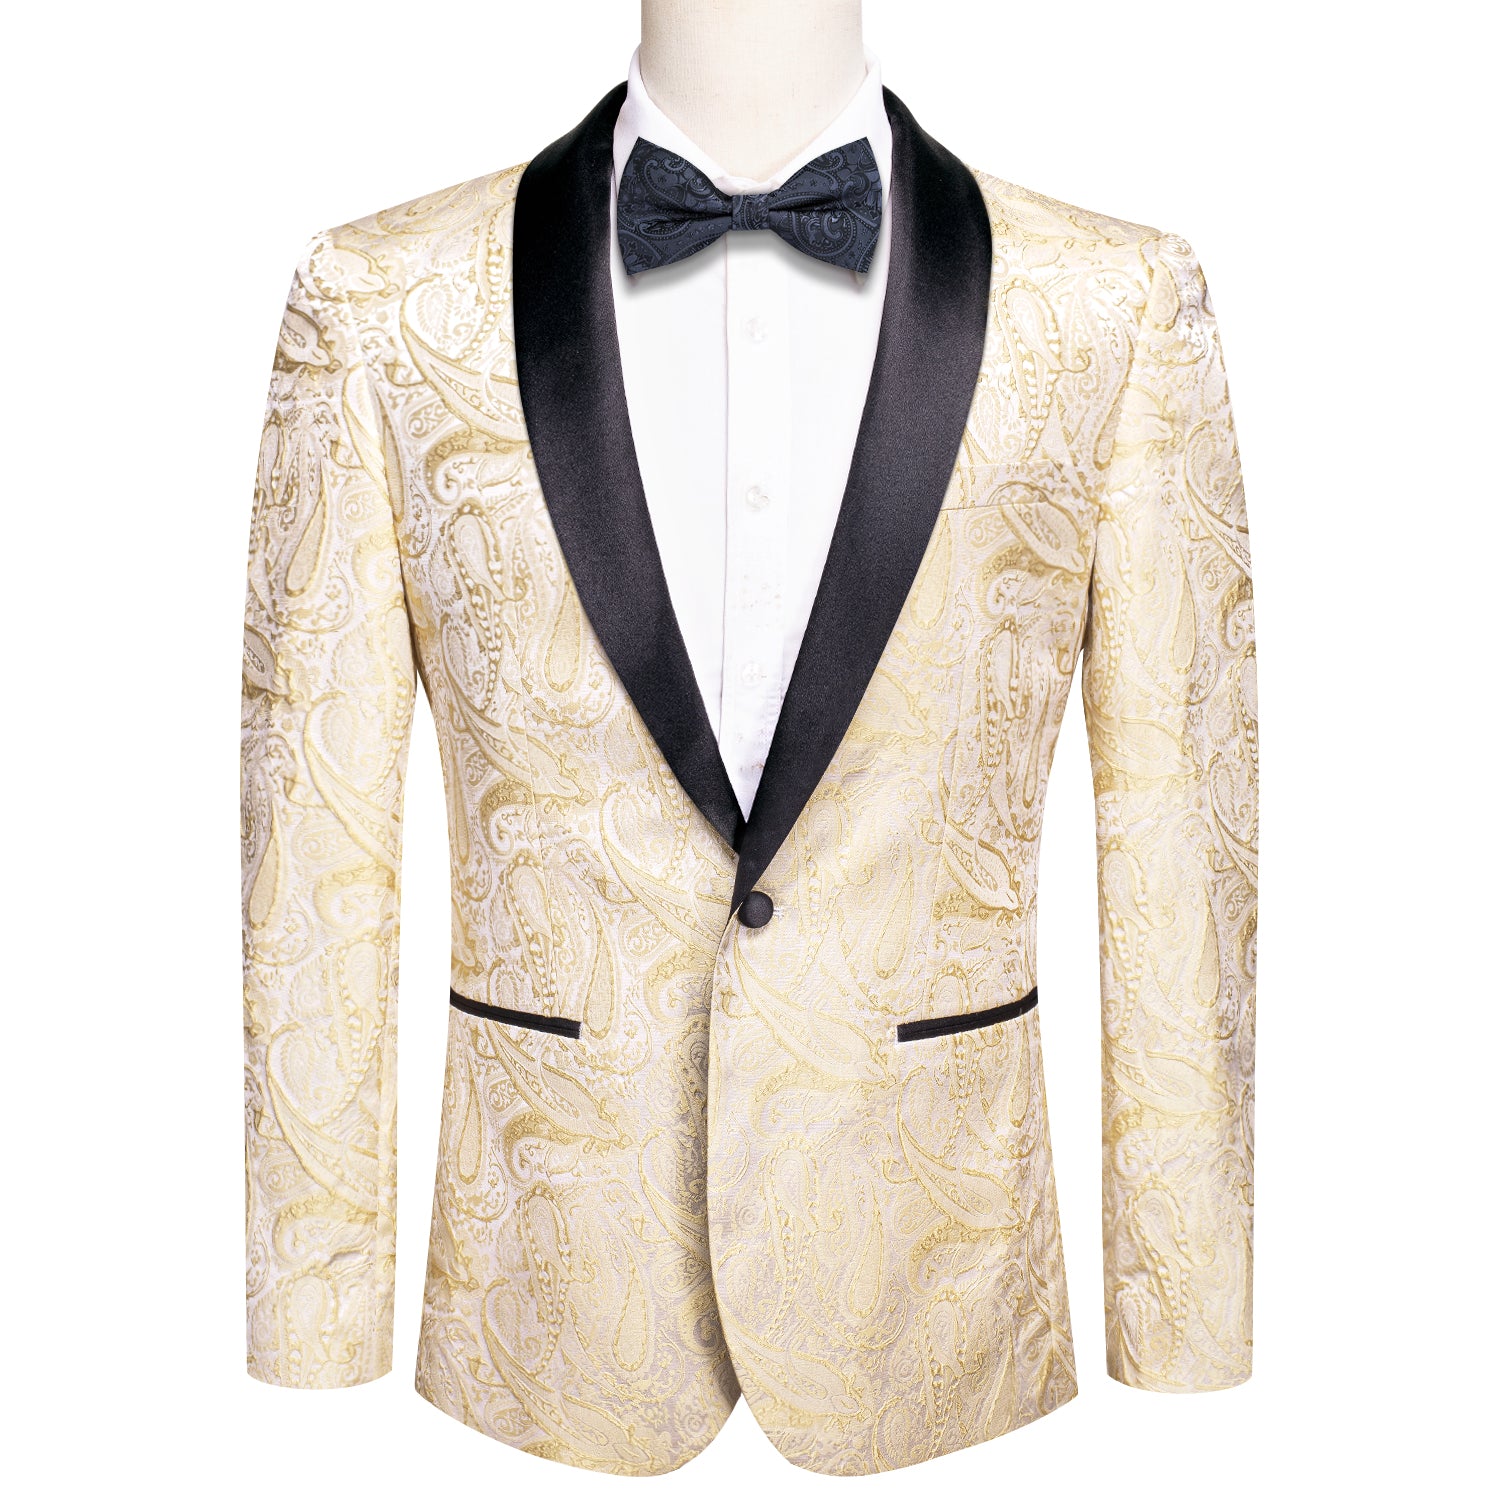 New Luxury Champagne Floral Men's Suit Set